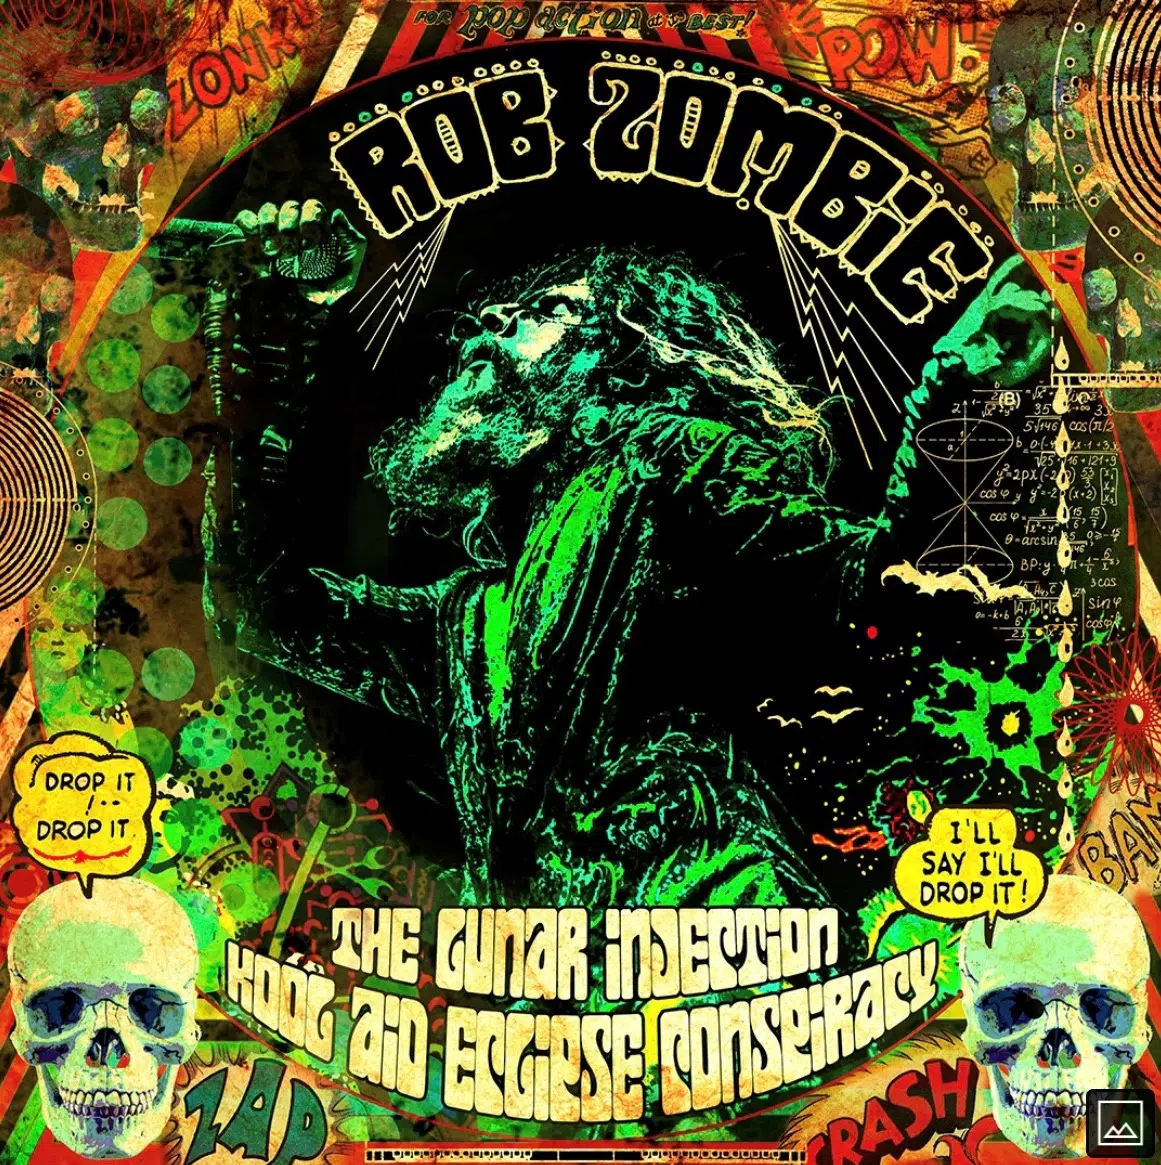 New Rob Zombie album announced!!